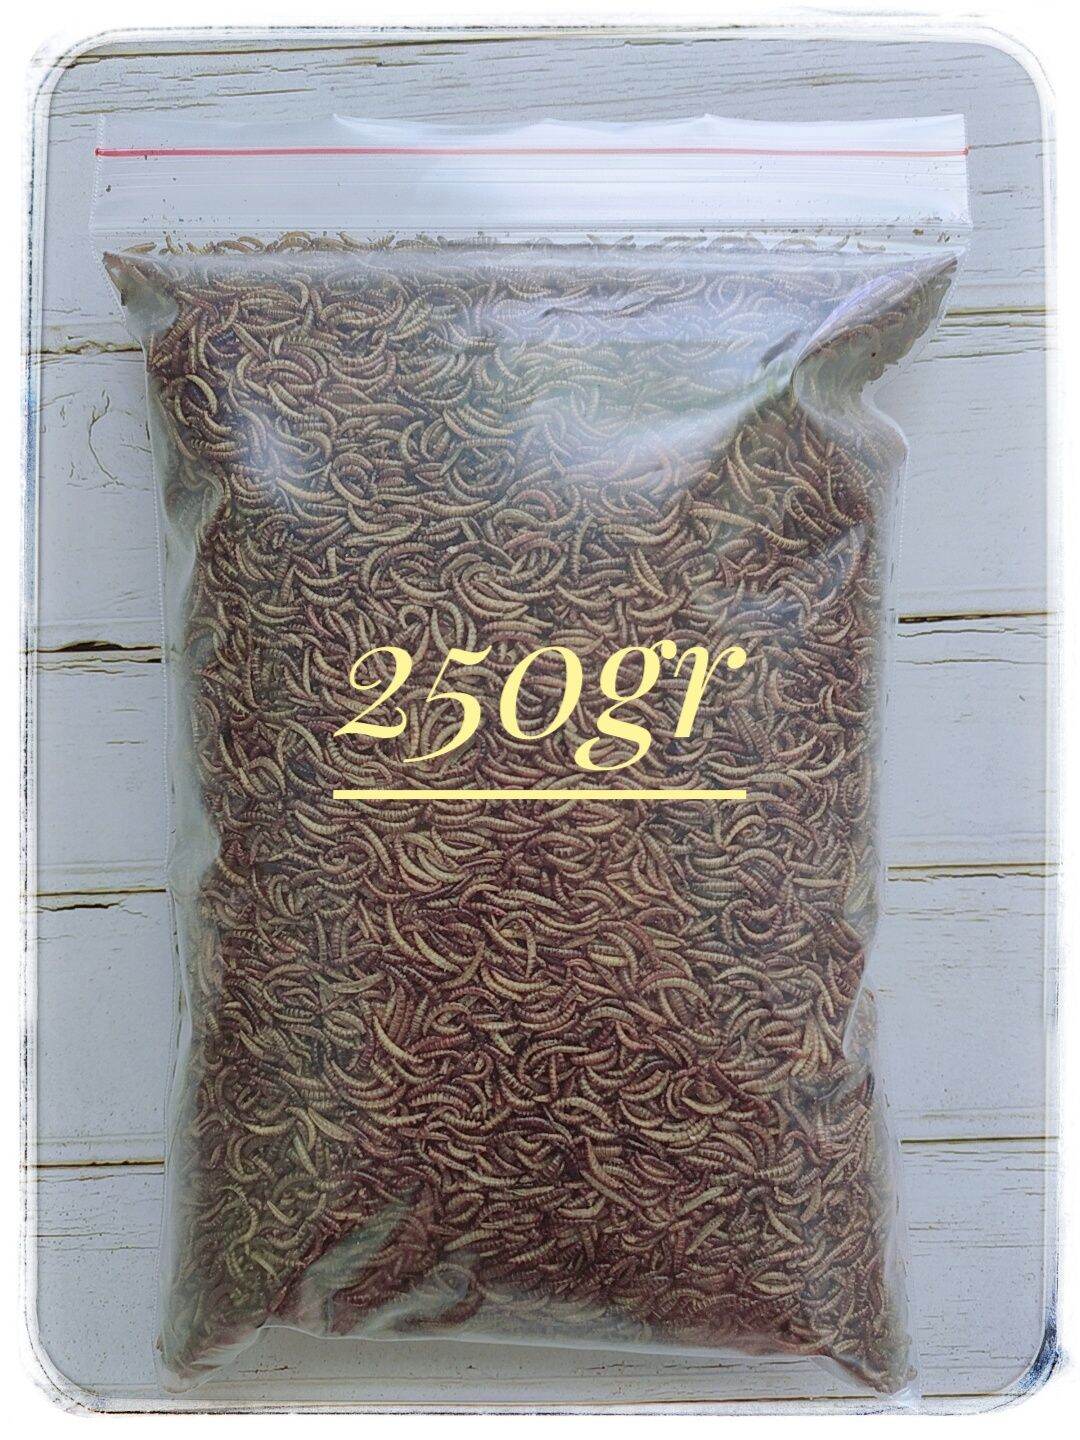 [HCM] -250GR- Sâu mini ( nhỏ) sấy khô- thức ăn dành cho hamster, chim, sóc, nhím, thú cưng